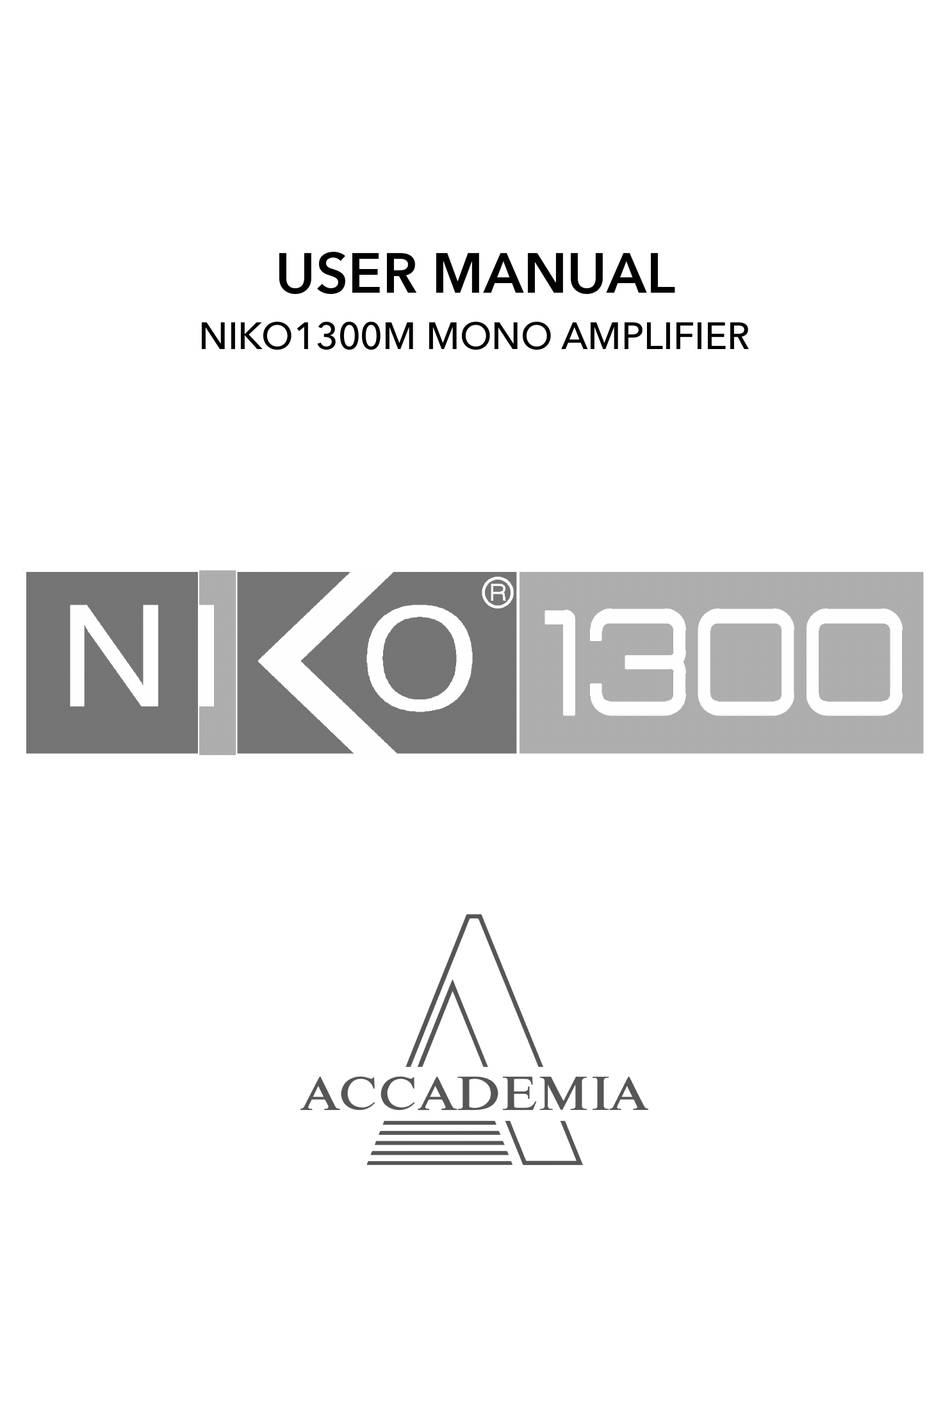 Accademia NIKO1300M